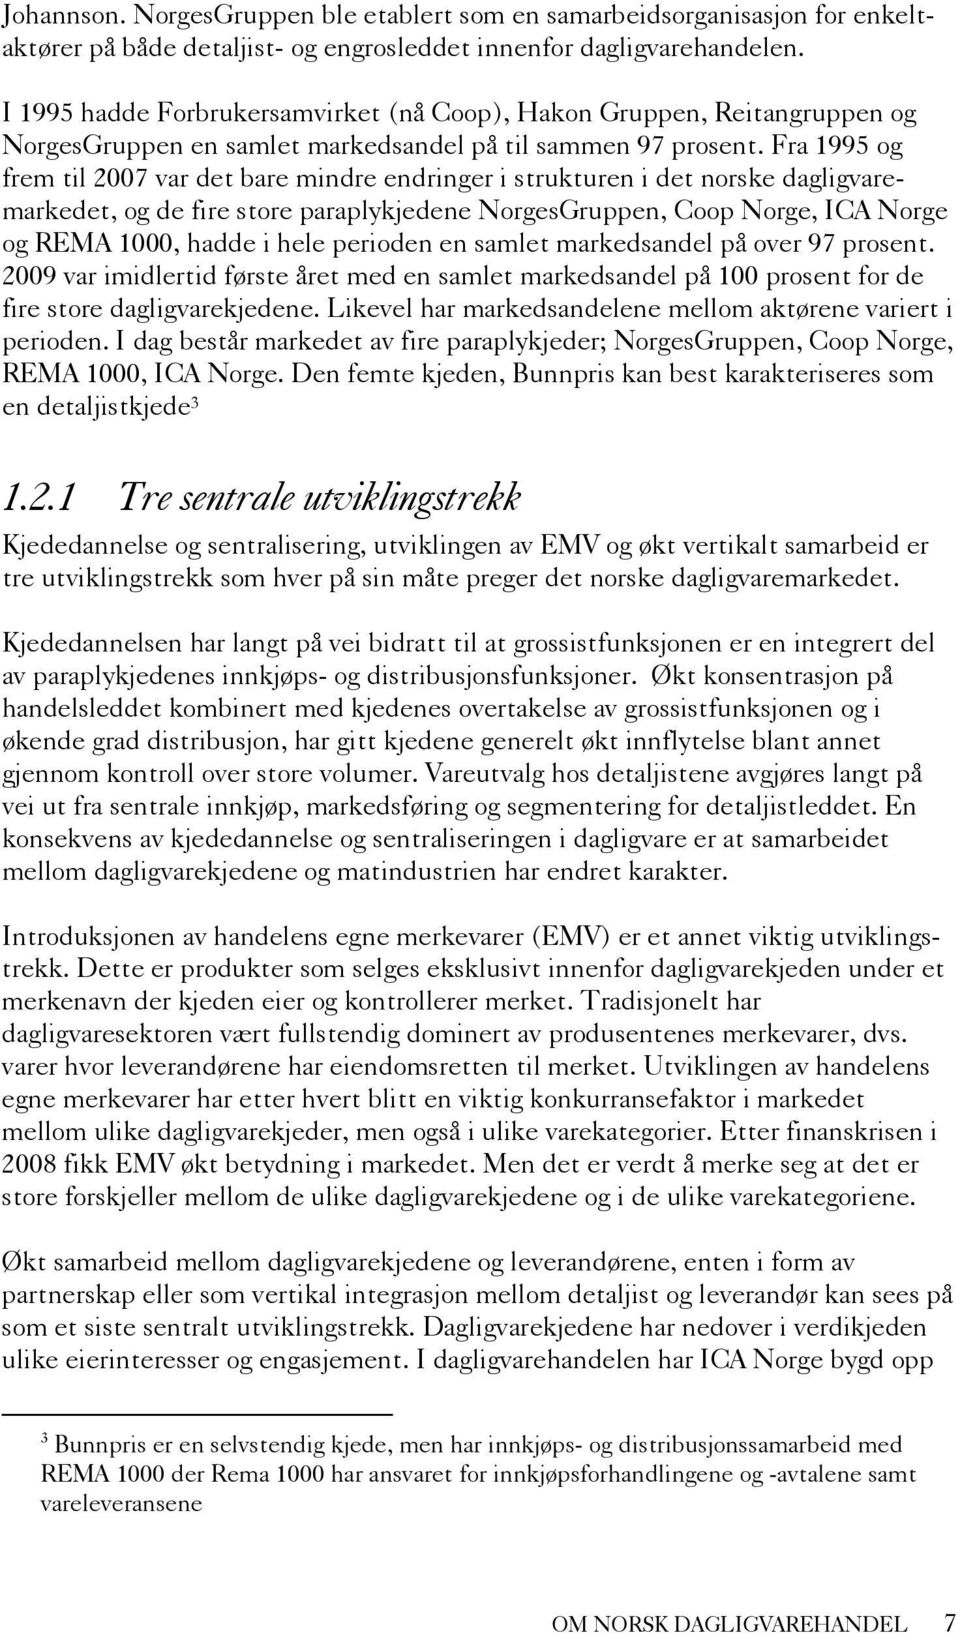 Fra 1995 og frem til 2007 var det bare mindre endringer i strukturen i det norske dagligvaremarkedet, og de fire store paraplykjedene NorgesGruppen, Coop Norge, ICA Norge og REMA 1000, hadde i hele